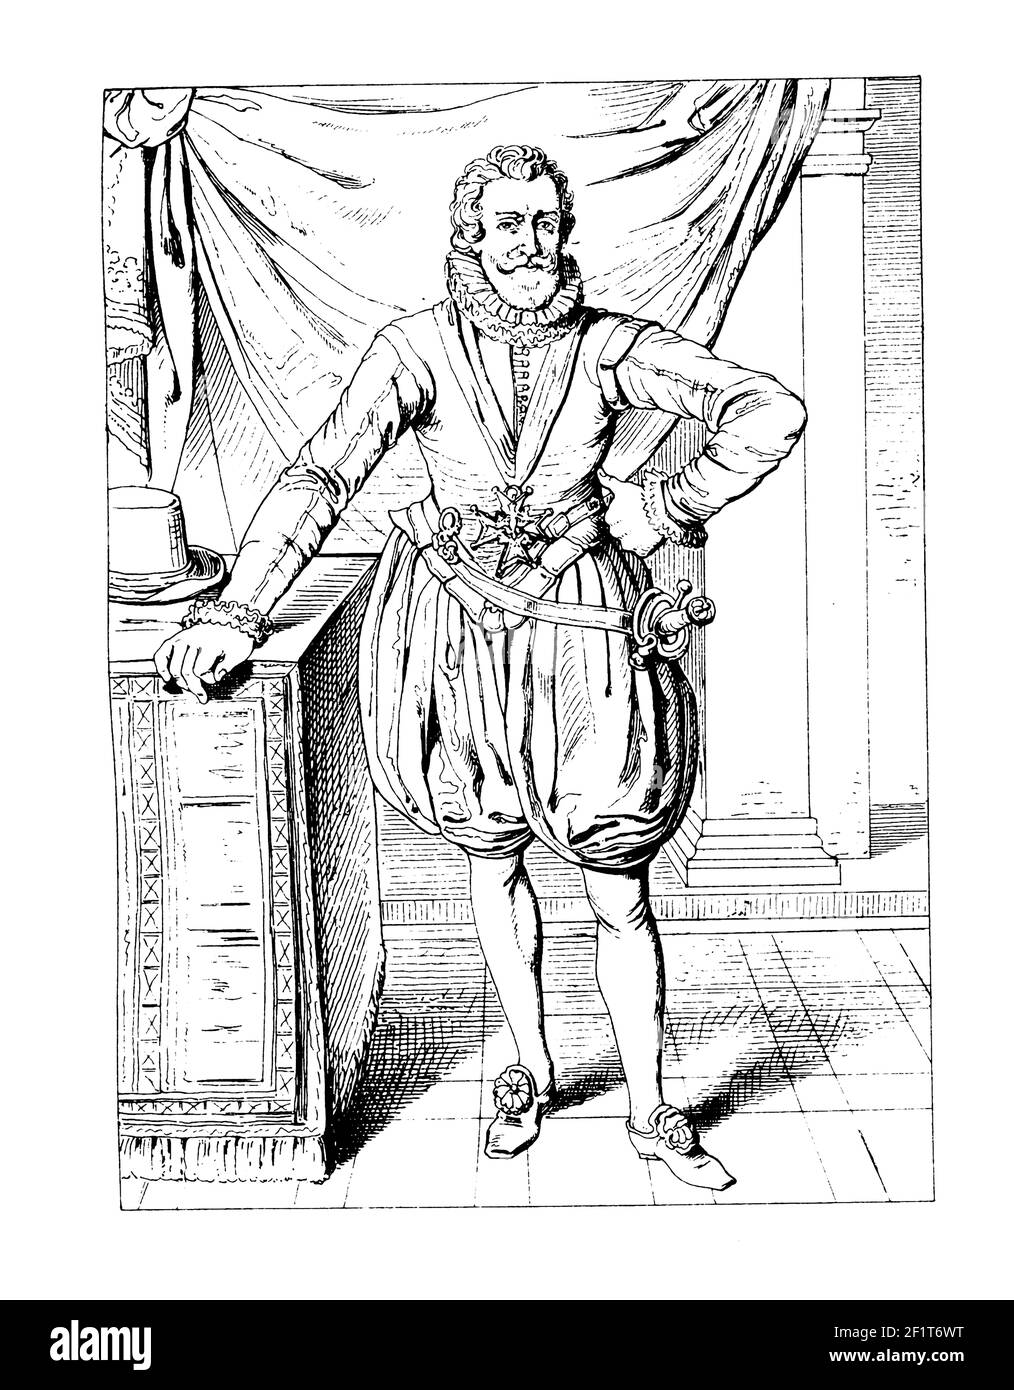 Illustration du XIXe siècle d'un portrait d'Henri IV, roi de France. Né le 13 décembre 1553 à Pau, France, il meurt le 14 mai 1610 à Paris, Franc Banque D'Images